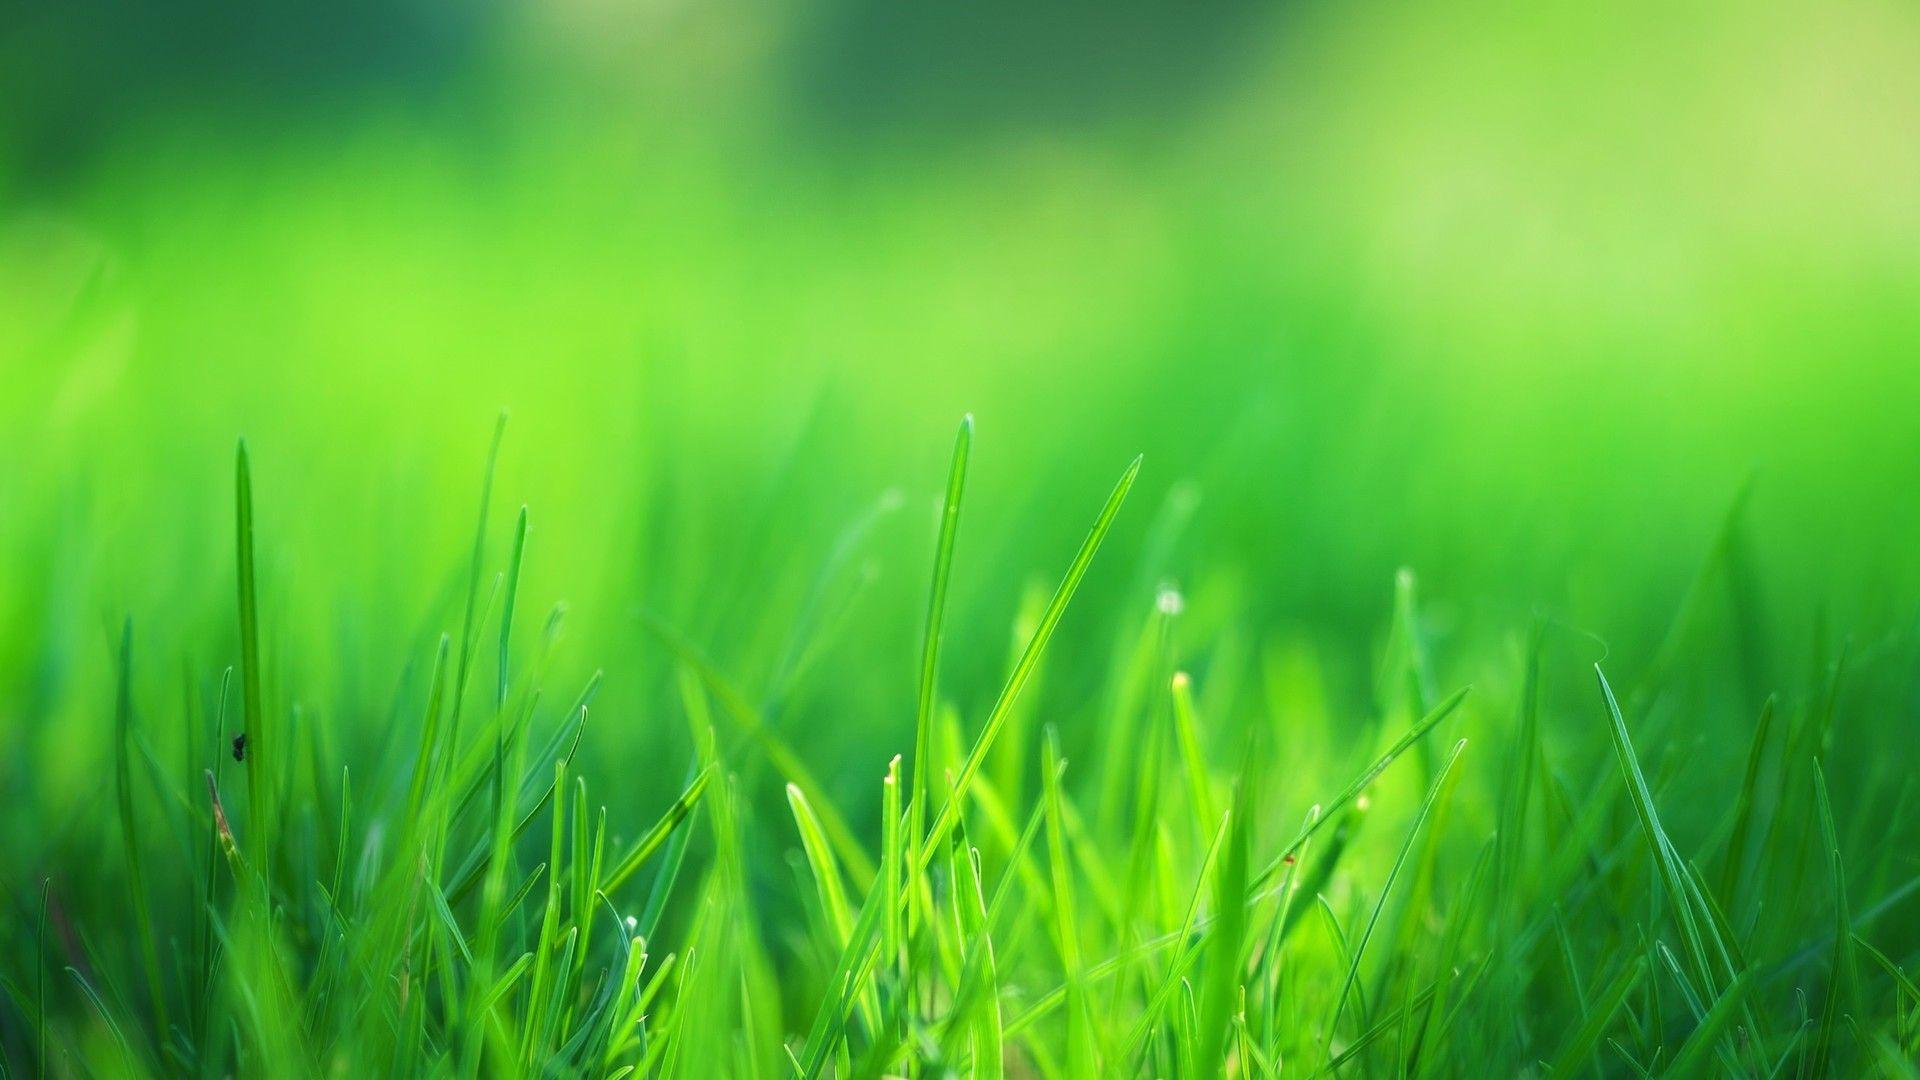 Cỏ xanh lá cây: Làm thế nào để bạn mang lại sự thanh thản và dễ chịu cho bản thân vào một ngày mệt mỏi sau những giờ làm việc? Tìm hiểu những bức ảnh về cỏ xanh lá cây. Đó là một sự kết hợp tuyệt vời của màu xanh nhẹ, tươi mới và màu khói, tạo ra một không gian thư giãn, giúp bạn tìm lại sự cân bằng trong cuộc sống.